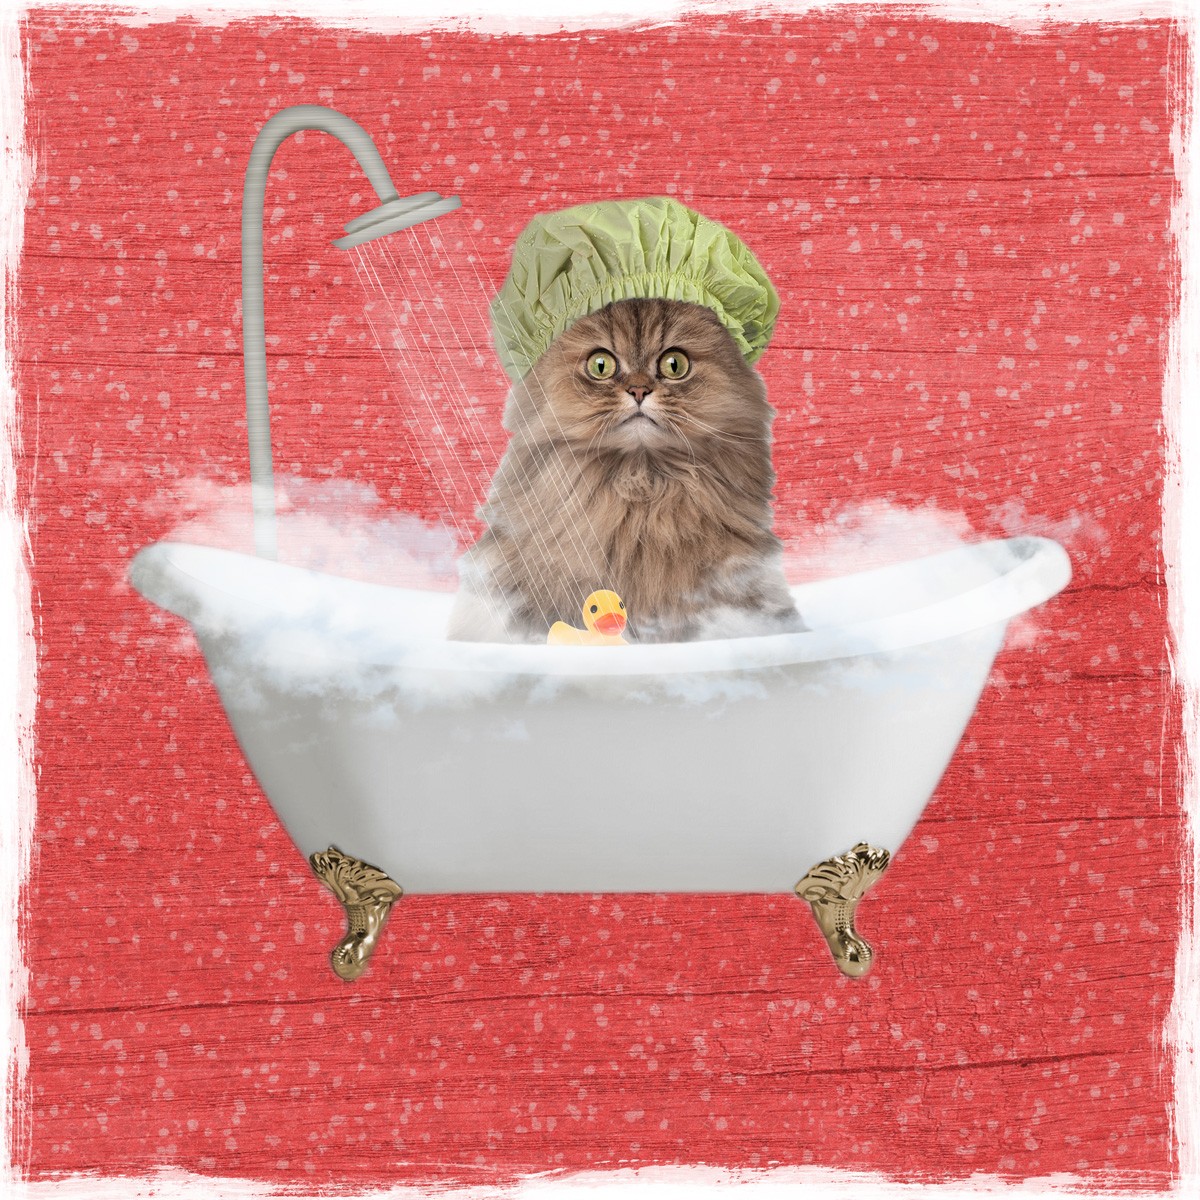 Marcus Prime, Sparkling Kitty 1 (Katze, Badewanne, Dusche, Badeschaum, Badehaube,  witzig, lustig, niedlich, Jugendzimmer, Badezimmer, Grafik, Wunschgröße, bunt)